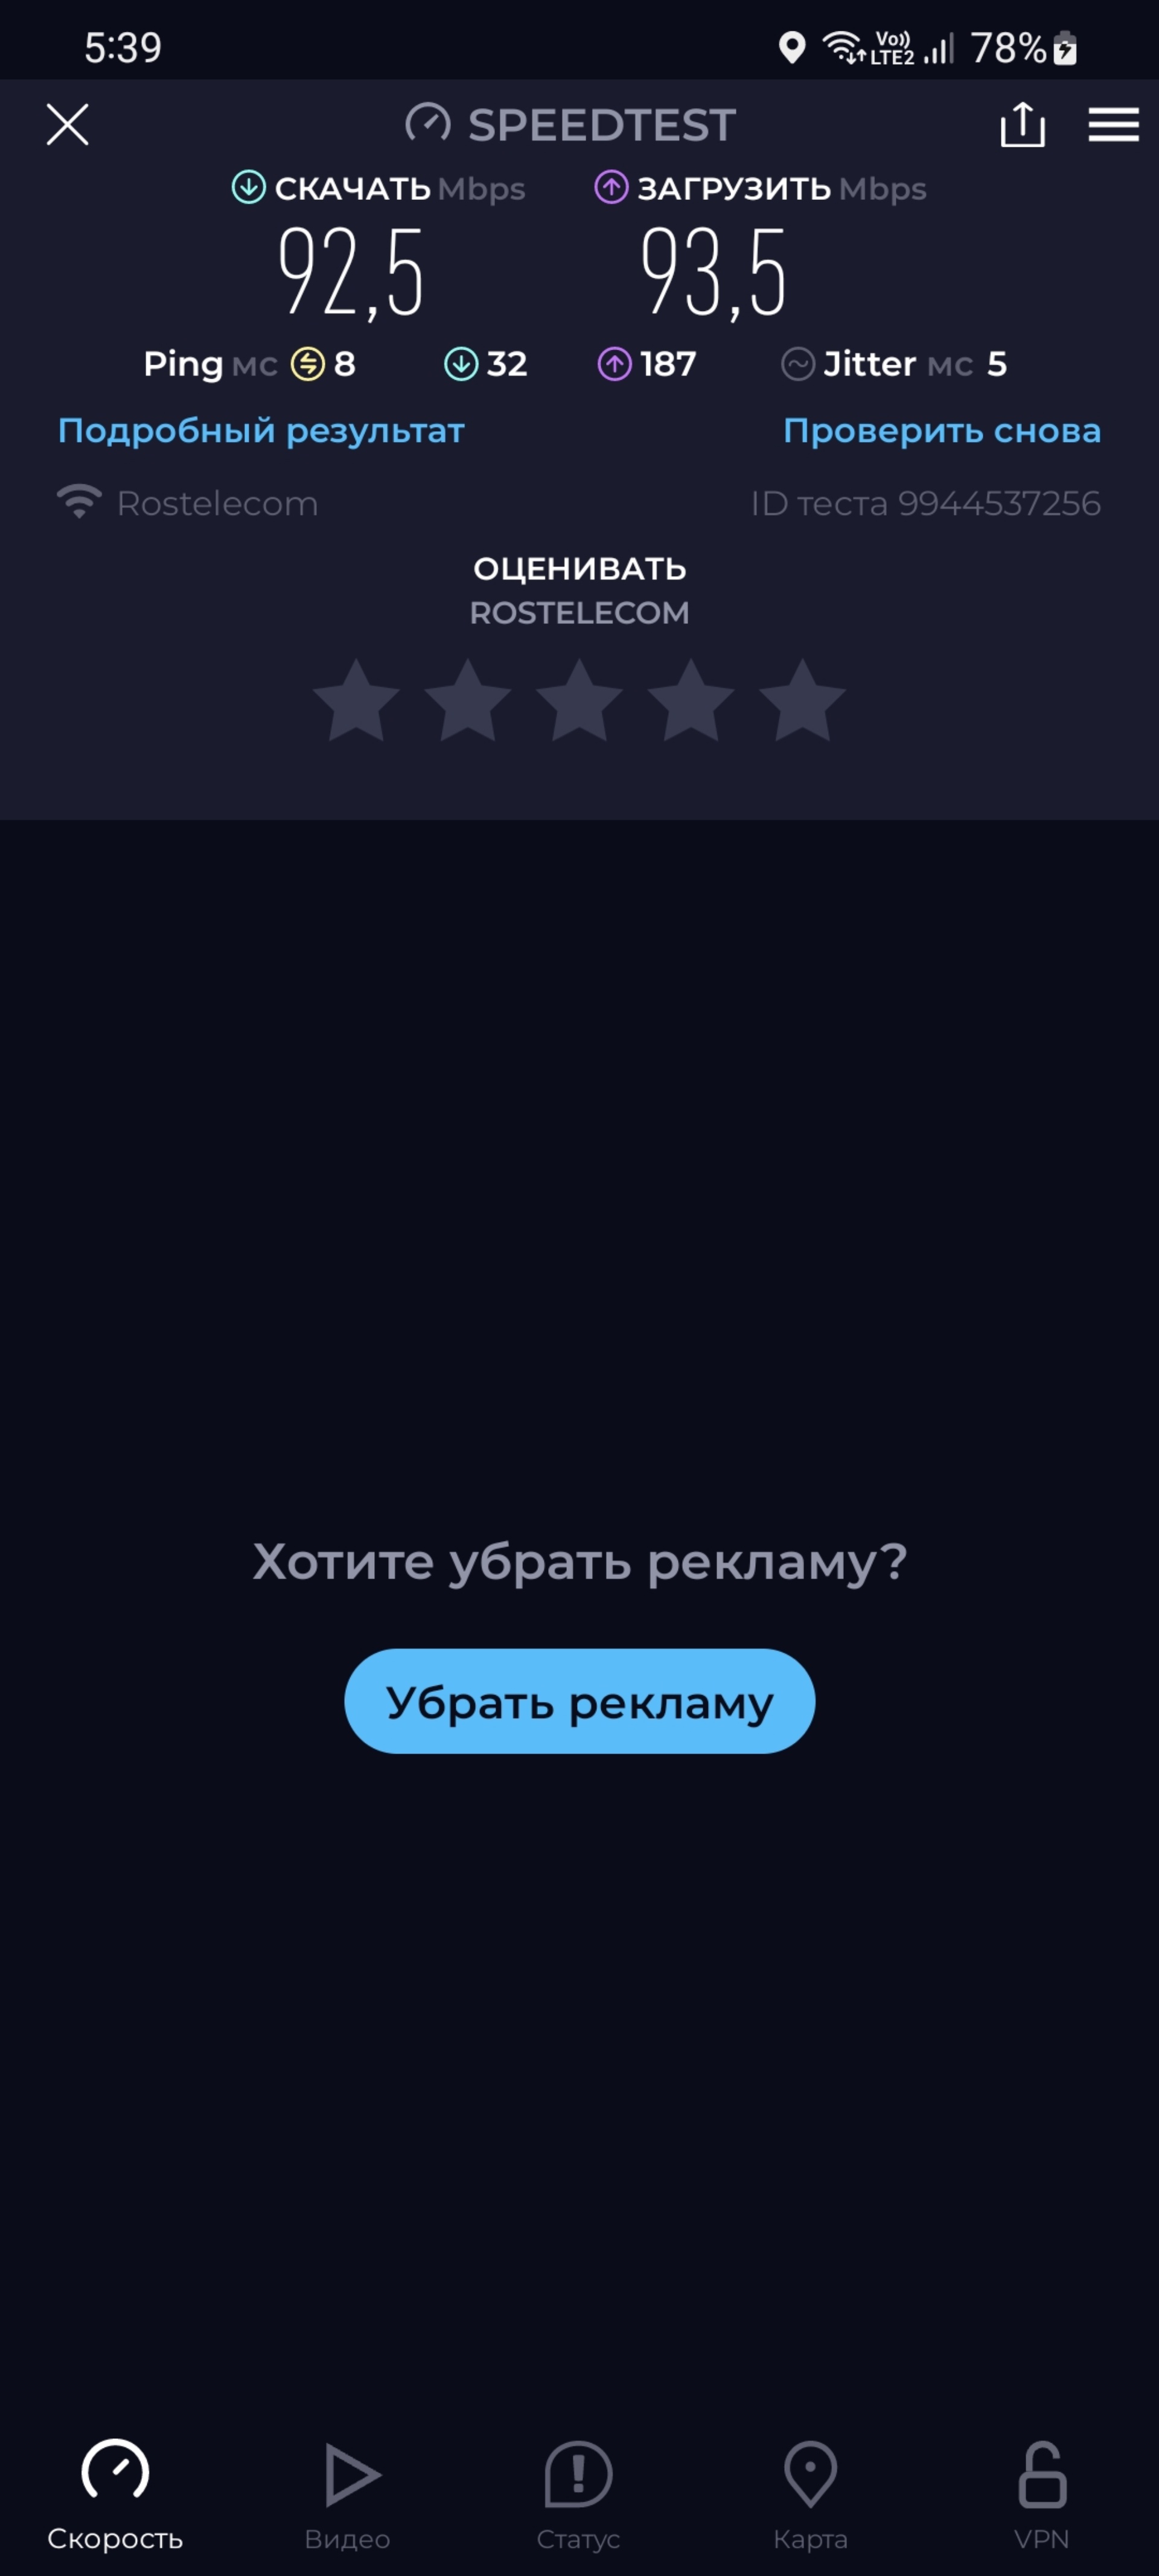 Низкая скорость интернета (ростелеком) - Форум internat-mednogorsk.ru